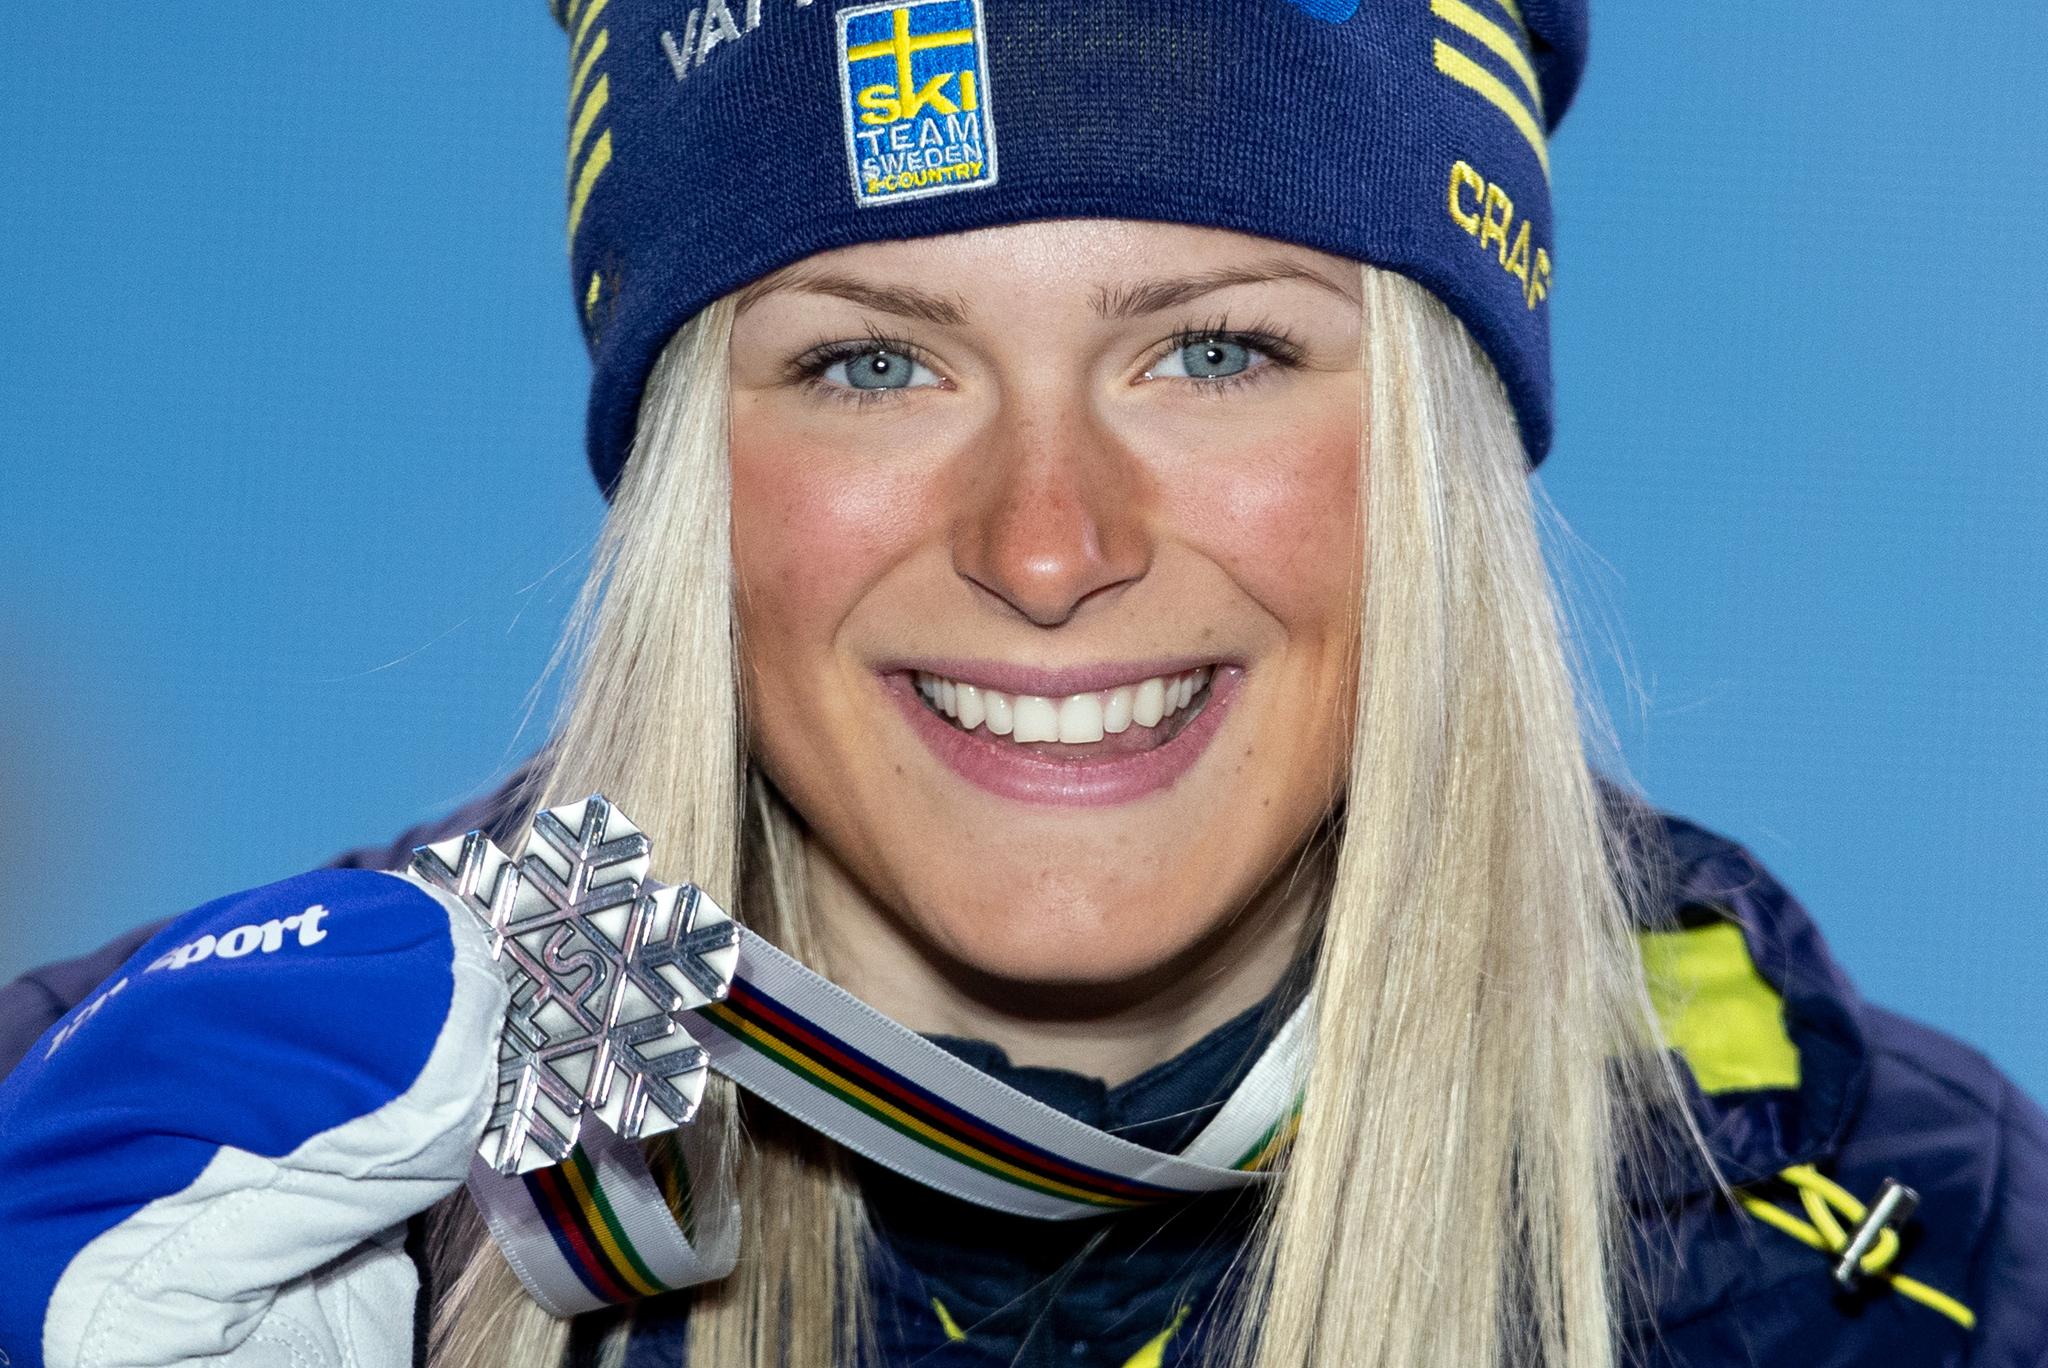 KOMET: Frida Karlsson med sølvmedaljen etter 10-kilometeren i VM i Seefeld i 2019. 